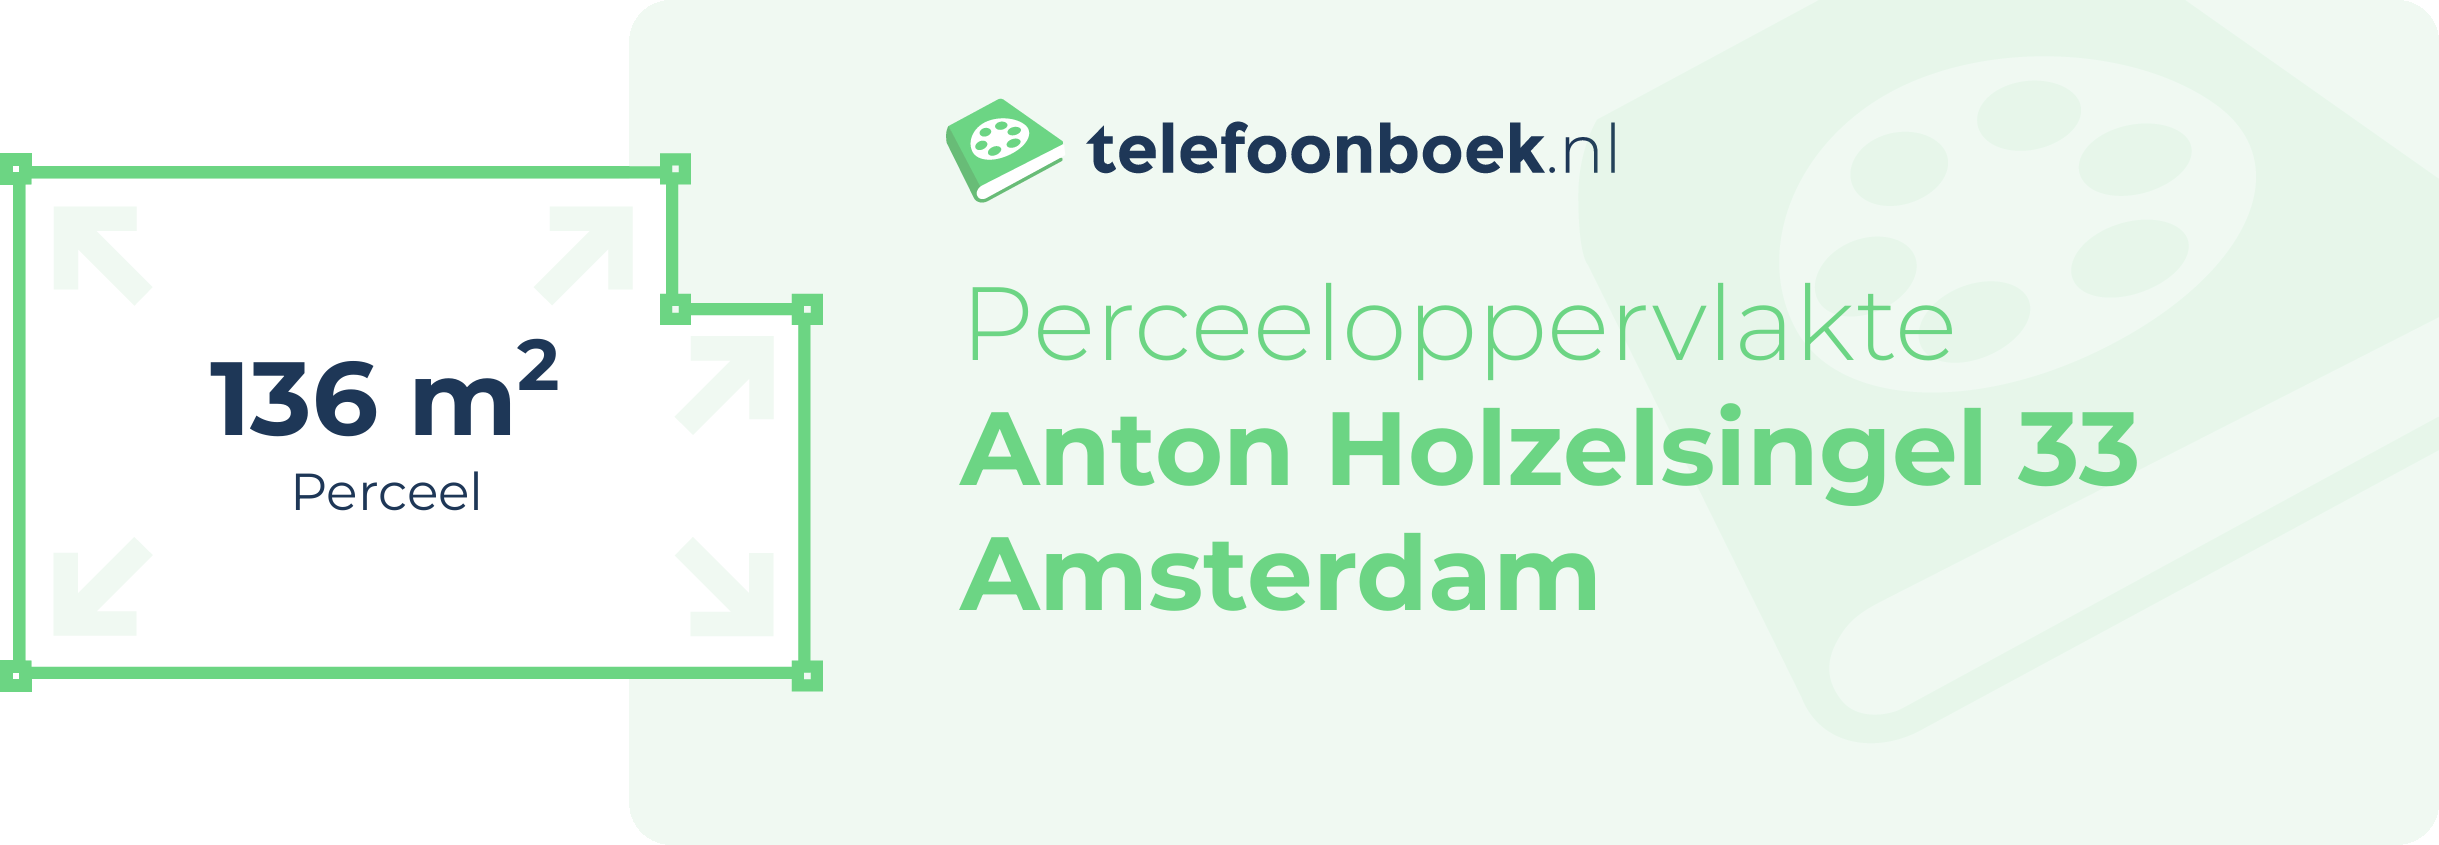 Perceeloppervlakte Anton Holzelsingel 33 Amsterdam